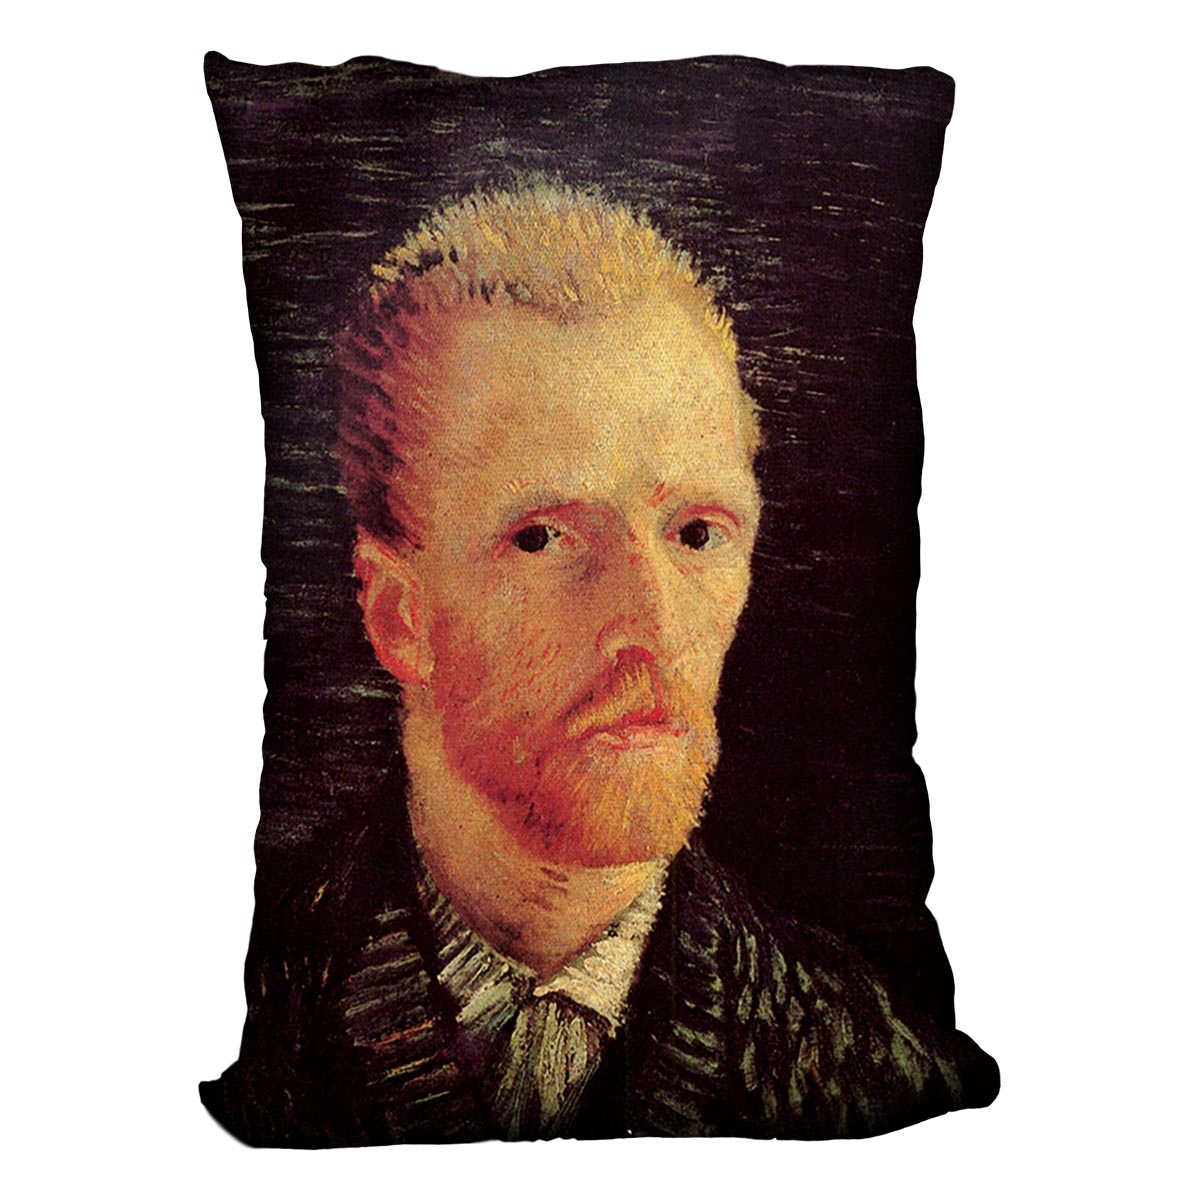 Self-Portrait 6 by Van Gogh Cushion